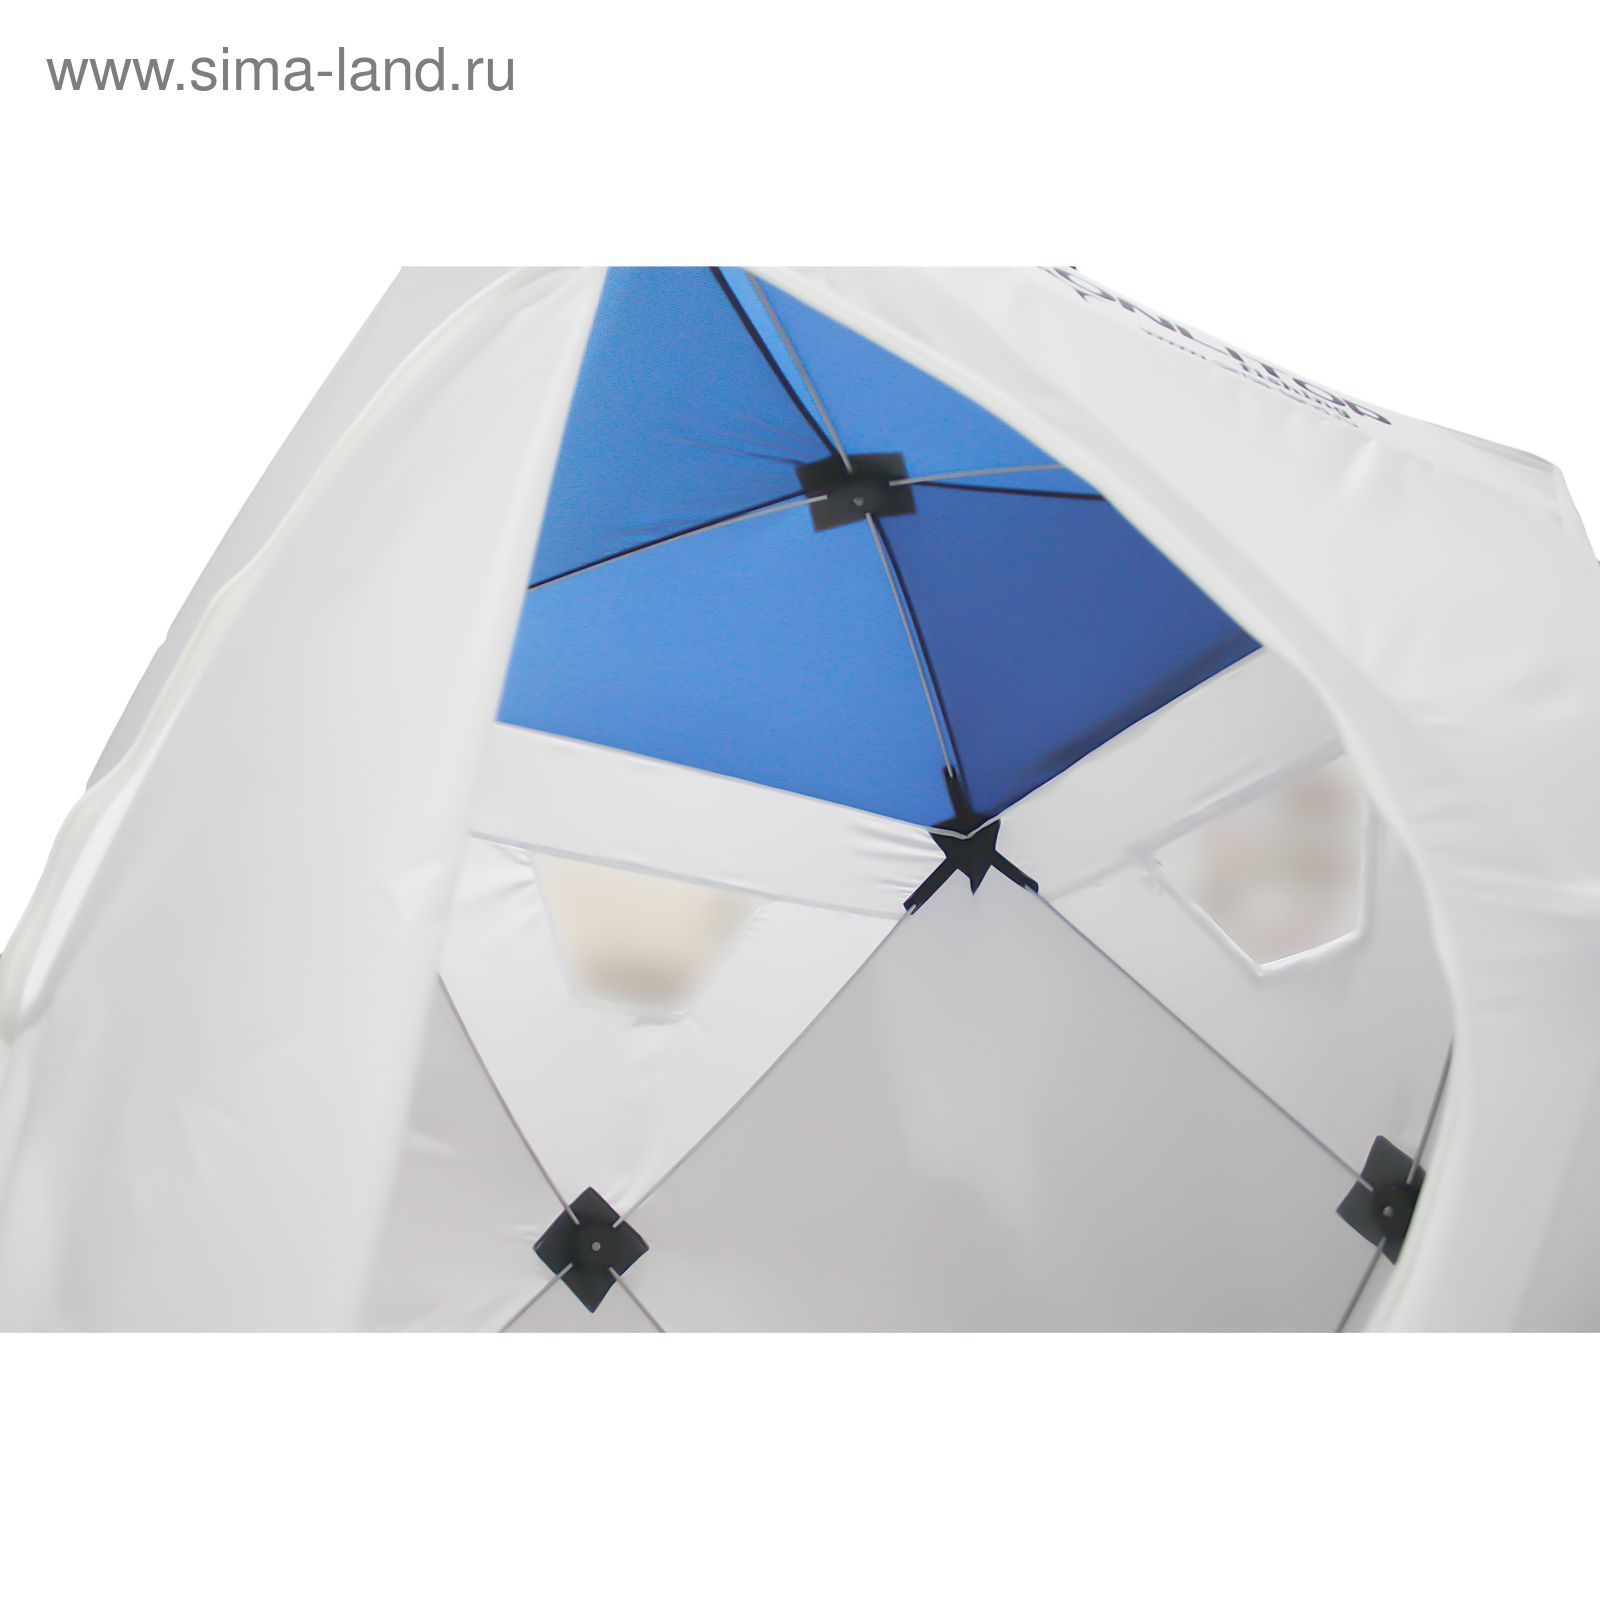 Палатка "Призма Люкс" 150, 1-слойная, цвет бело-синий